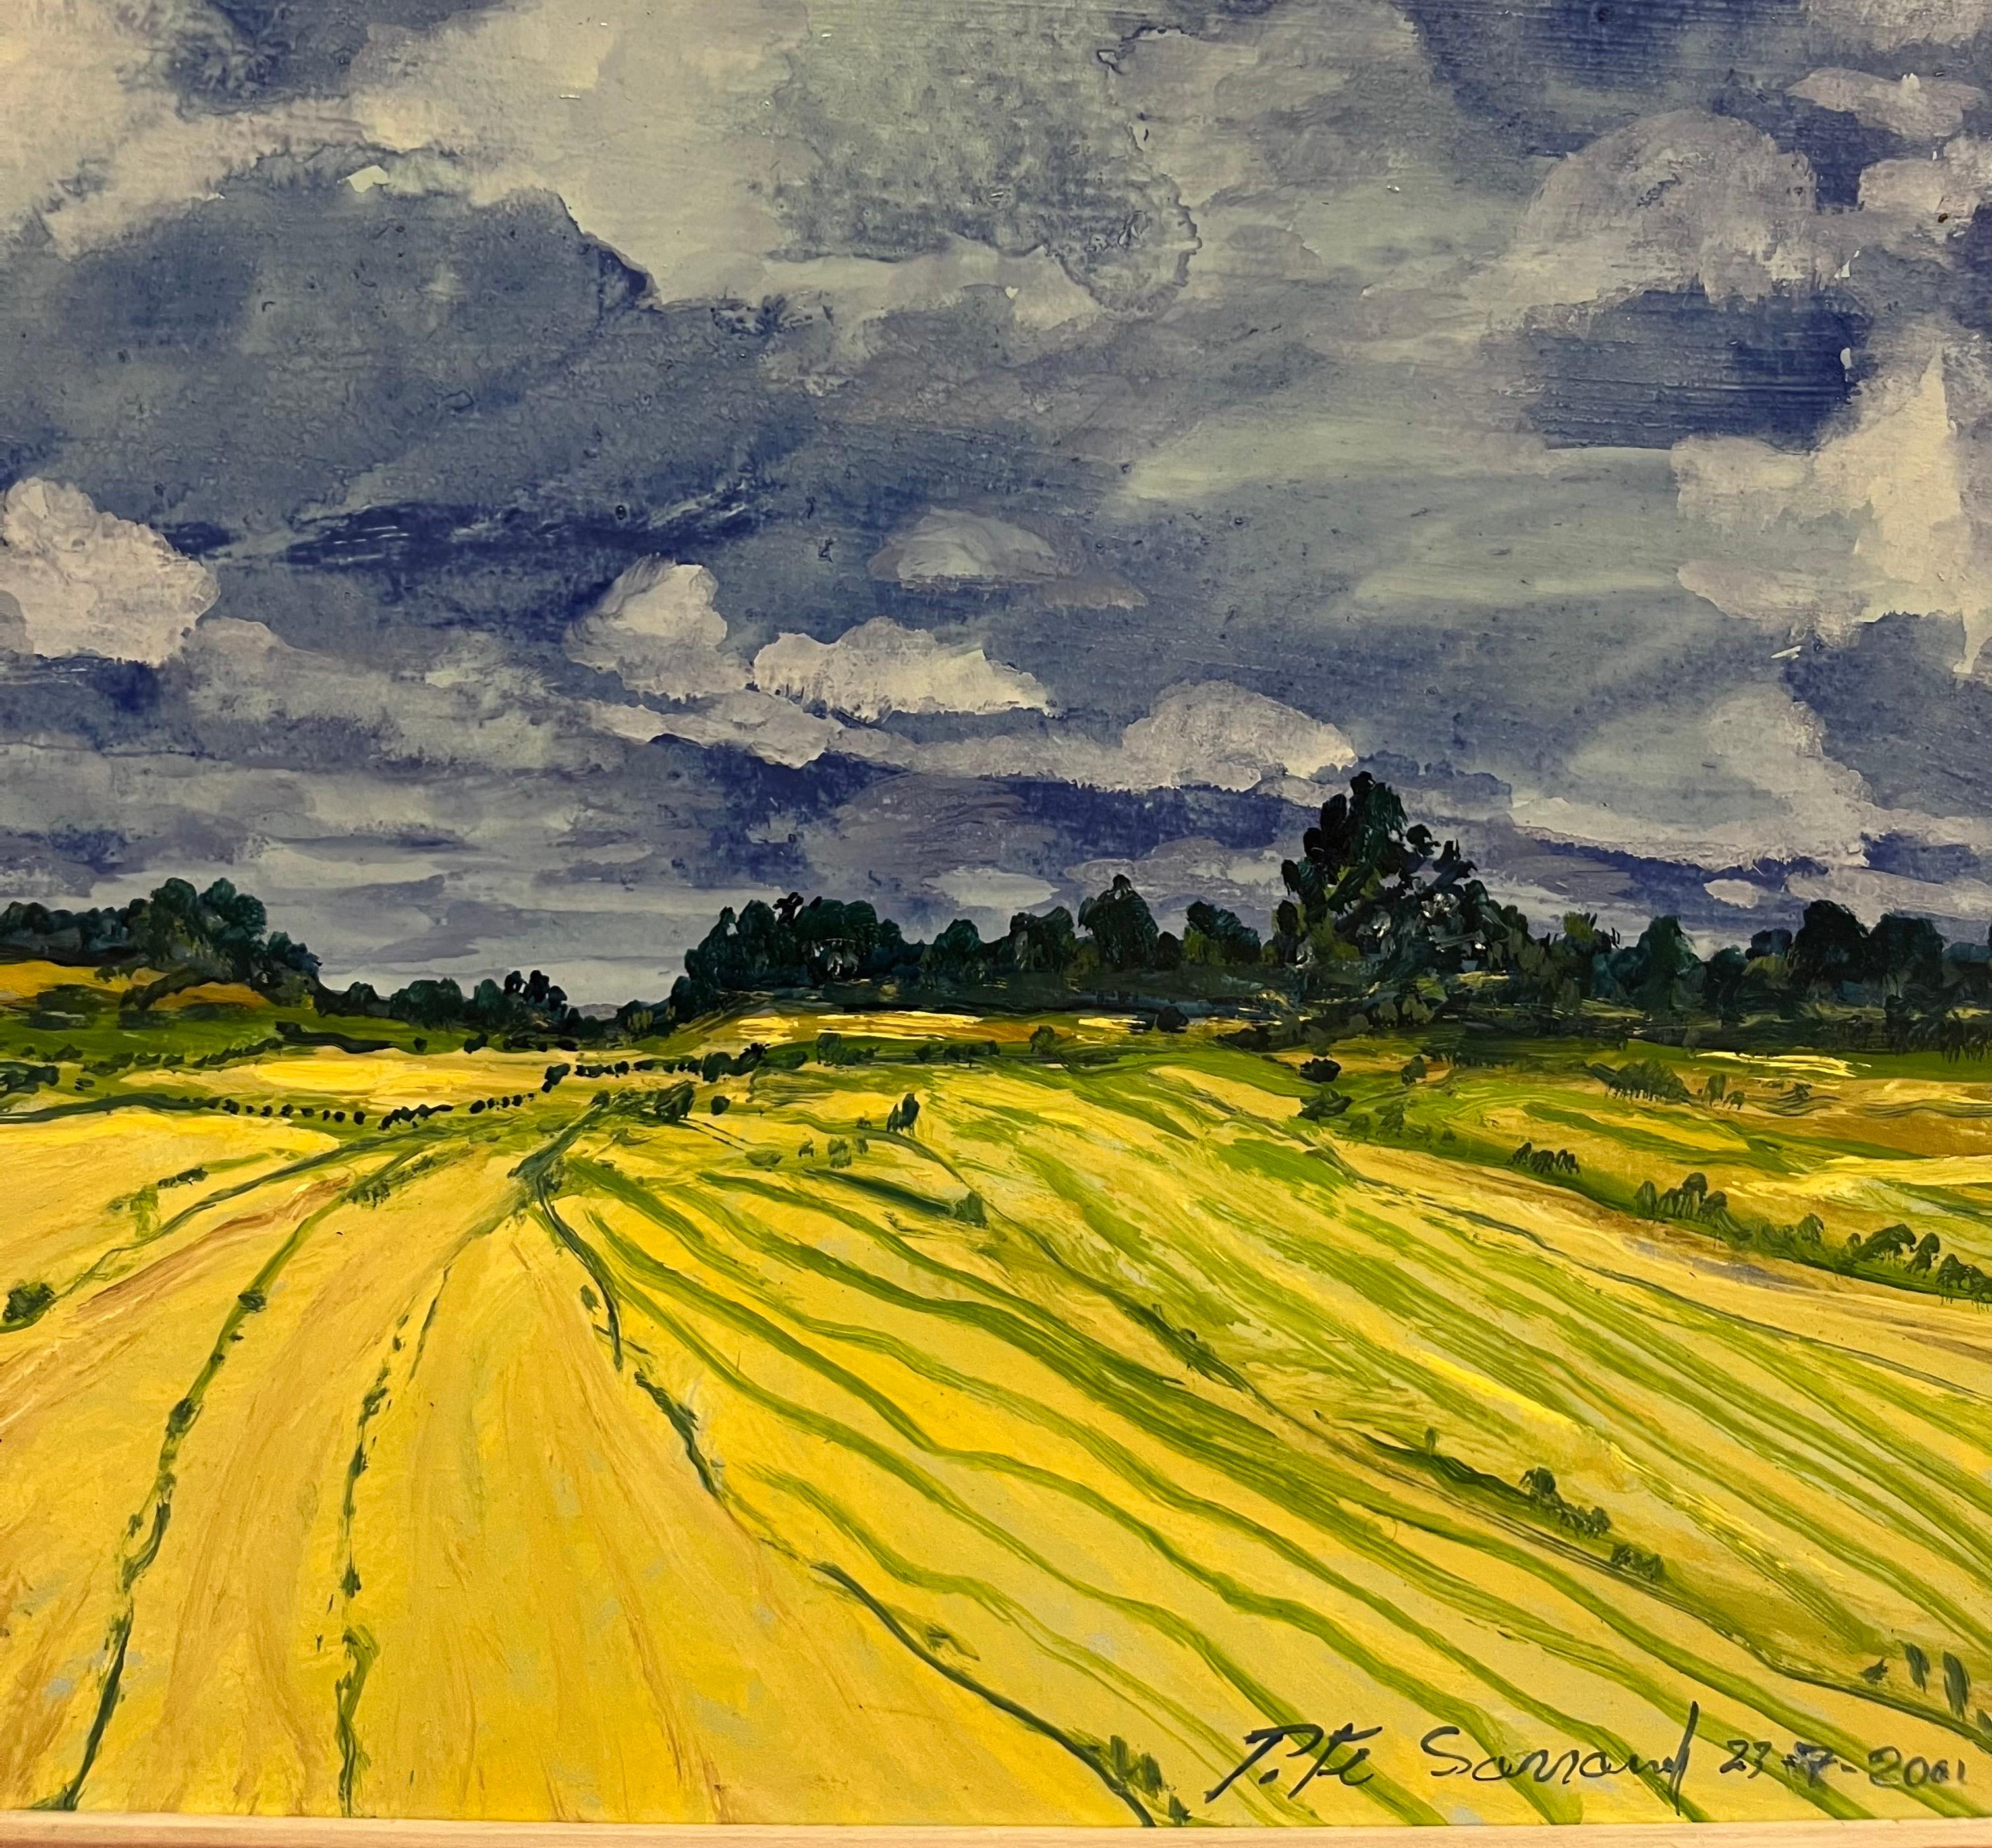 Opera luminosa del Pittore Francese di origini Russe PITE Sarranoff
Cielo tempestoso, nuvole campo di grano,ispirato a Van Gogh